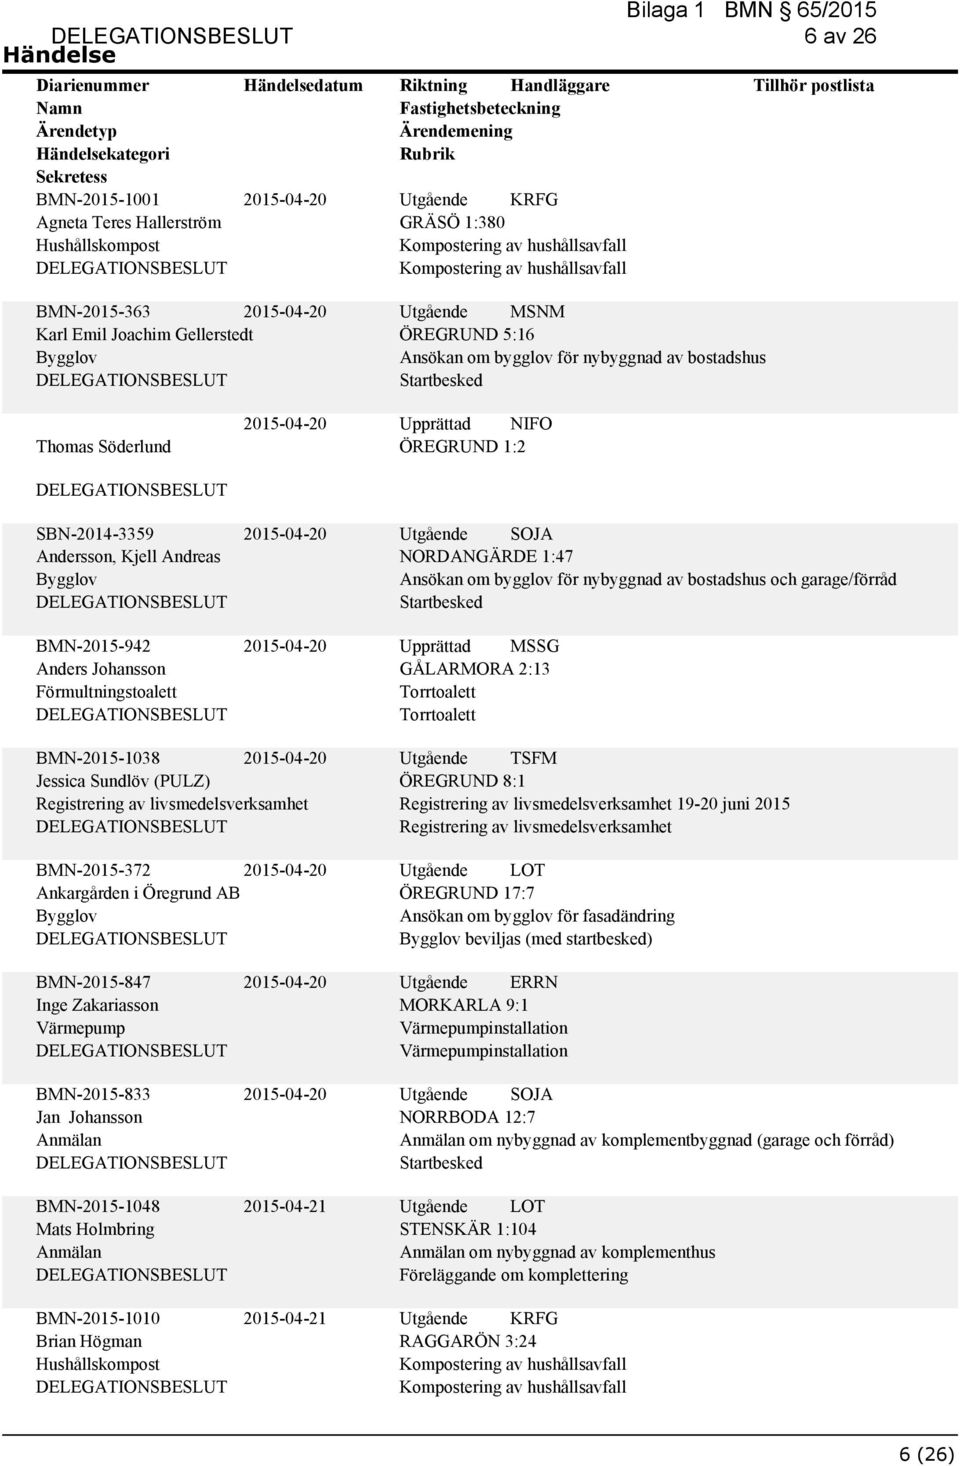 Upprättad MSSG GÅLARMORA 2:13 BMN-2015-1038 Jessica Sundlöv (PULZ) Registrering av livsmedelsverksamhet BMN-2015-372 Ankargården i Öregrund AB Utgående TSFM ÖREGRUND 8:1 Registrering av